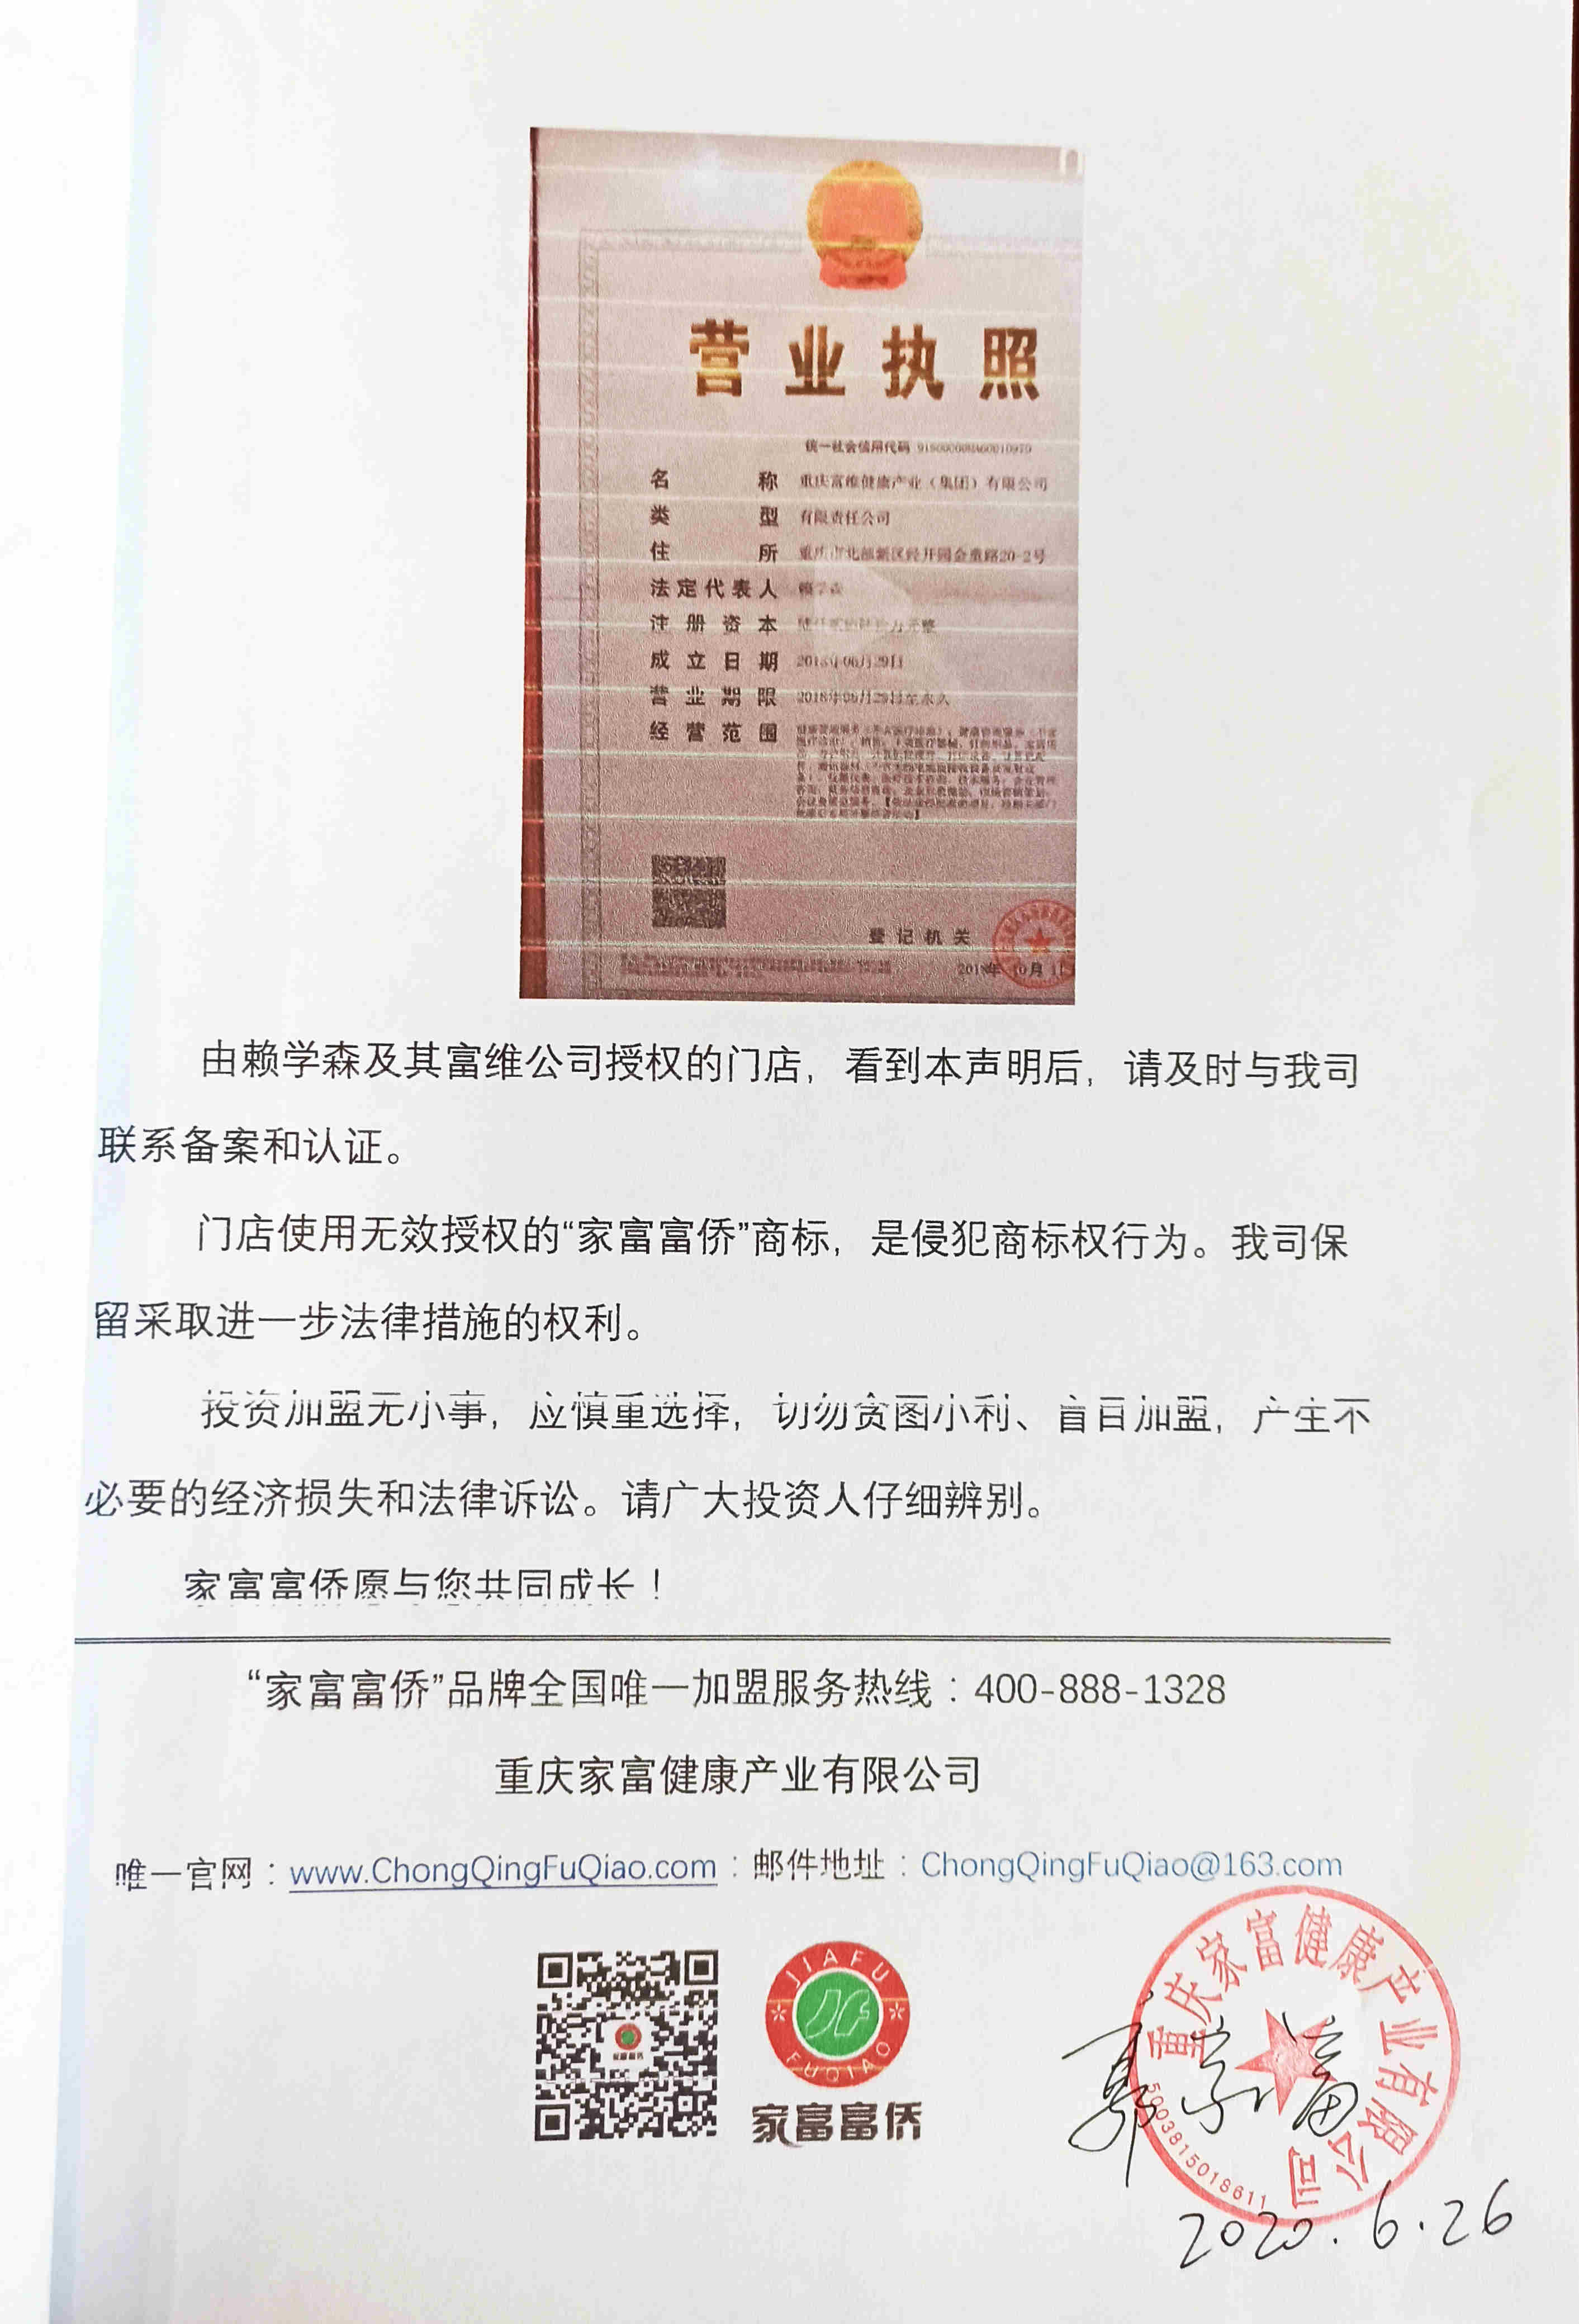 终止“赖学森（刘强）重庆富维”商标授权的特别声明